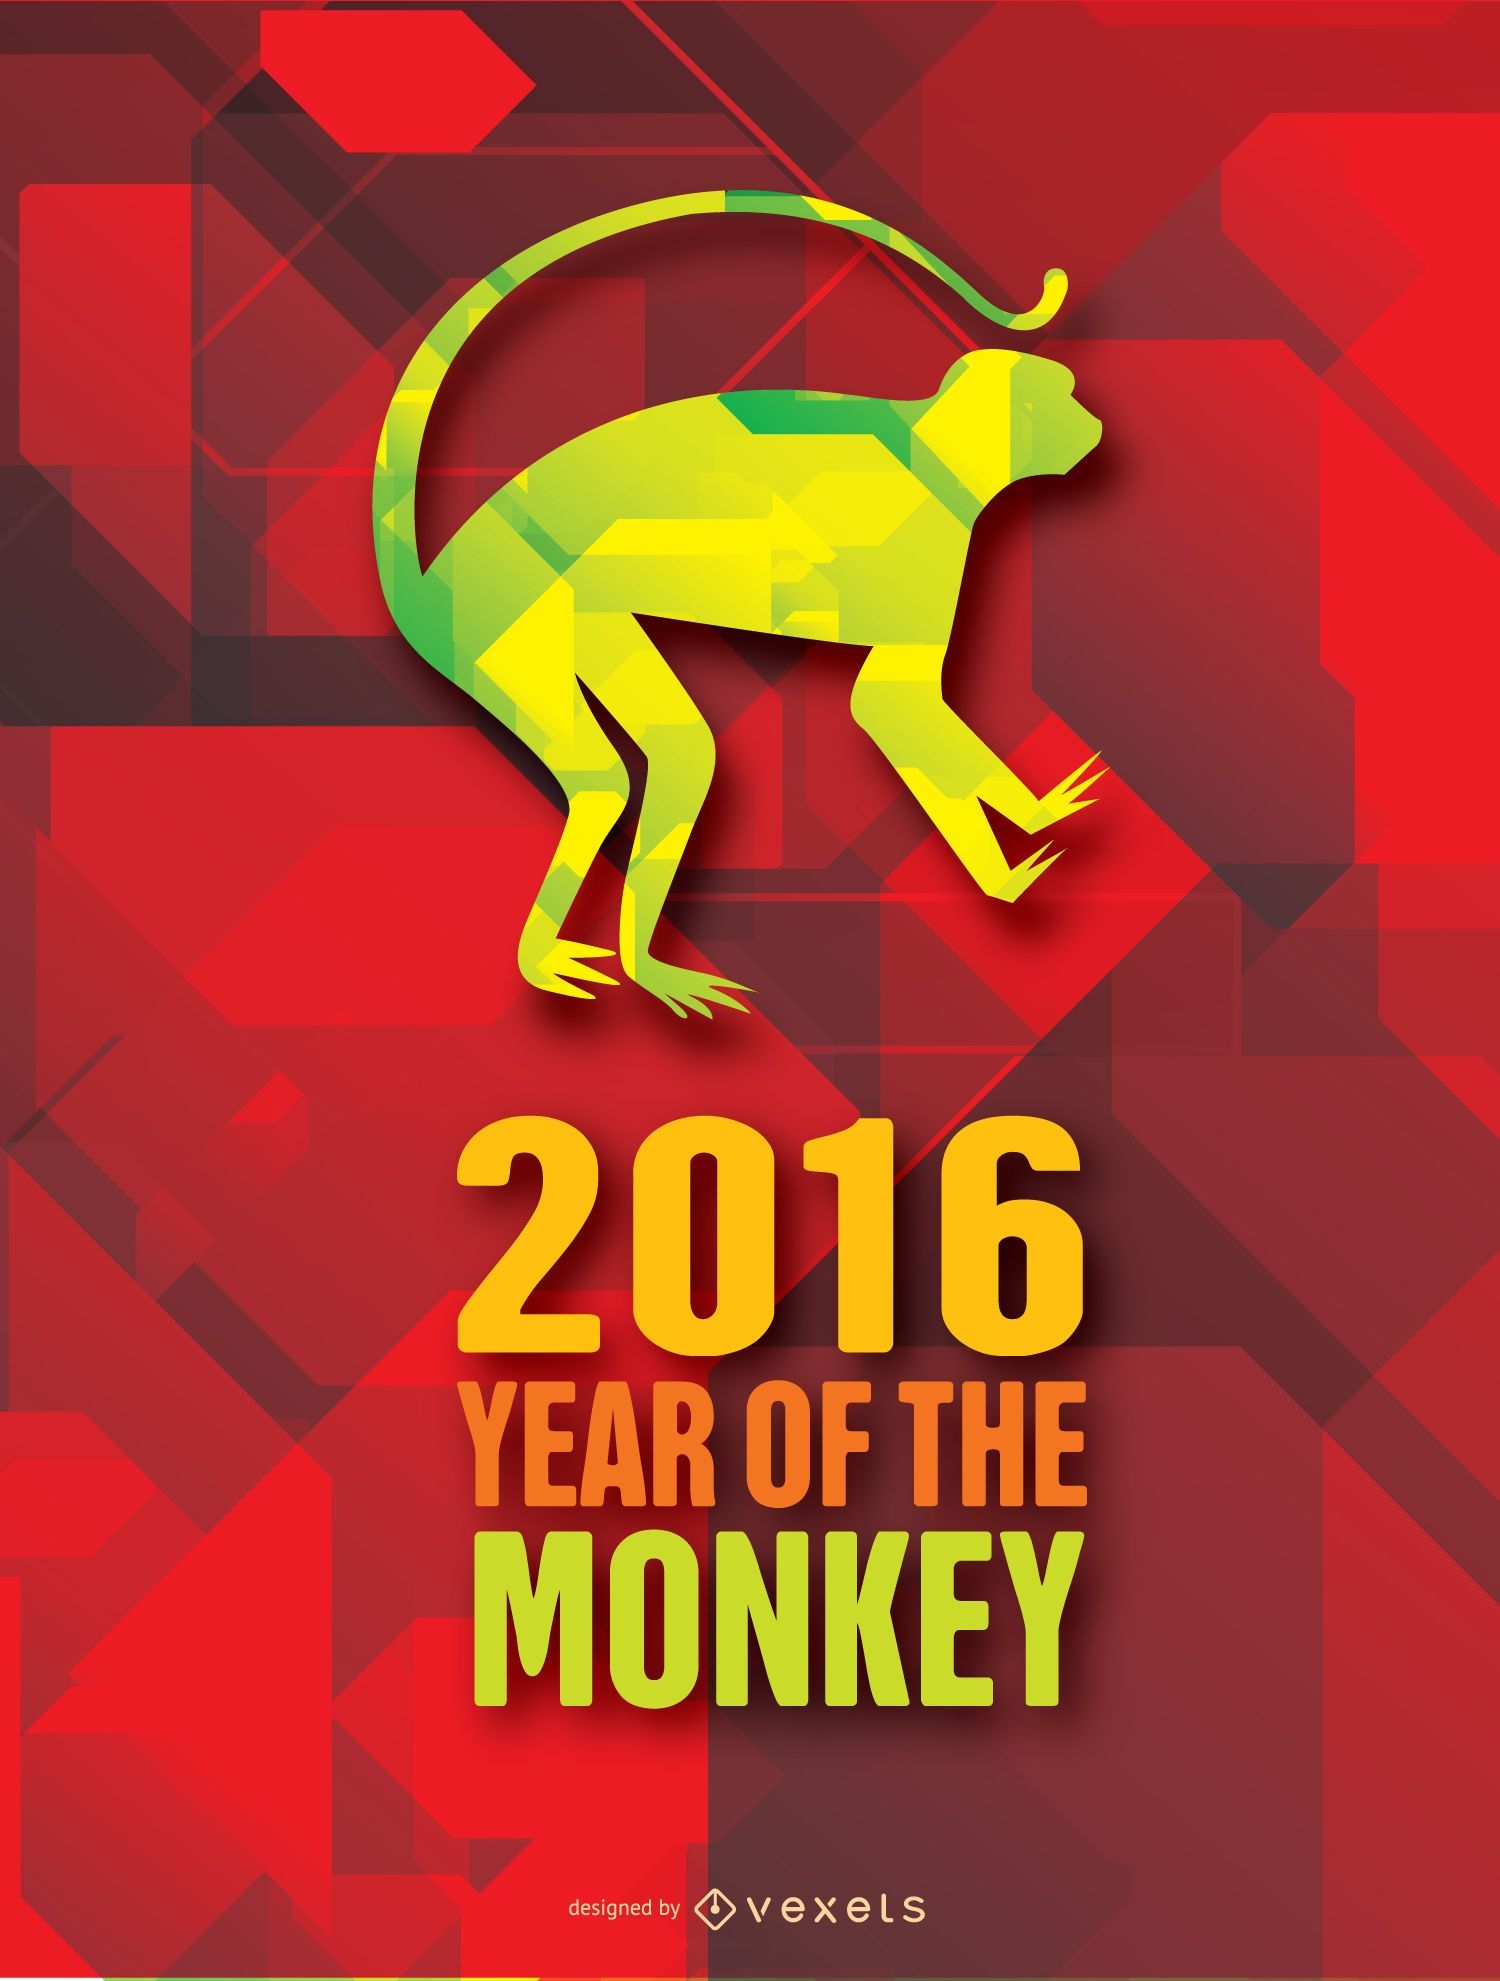 Plano de fundo do ano do Moneky 2016